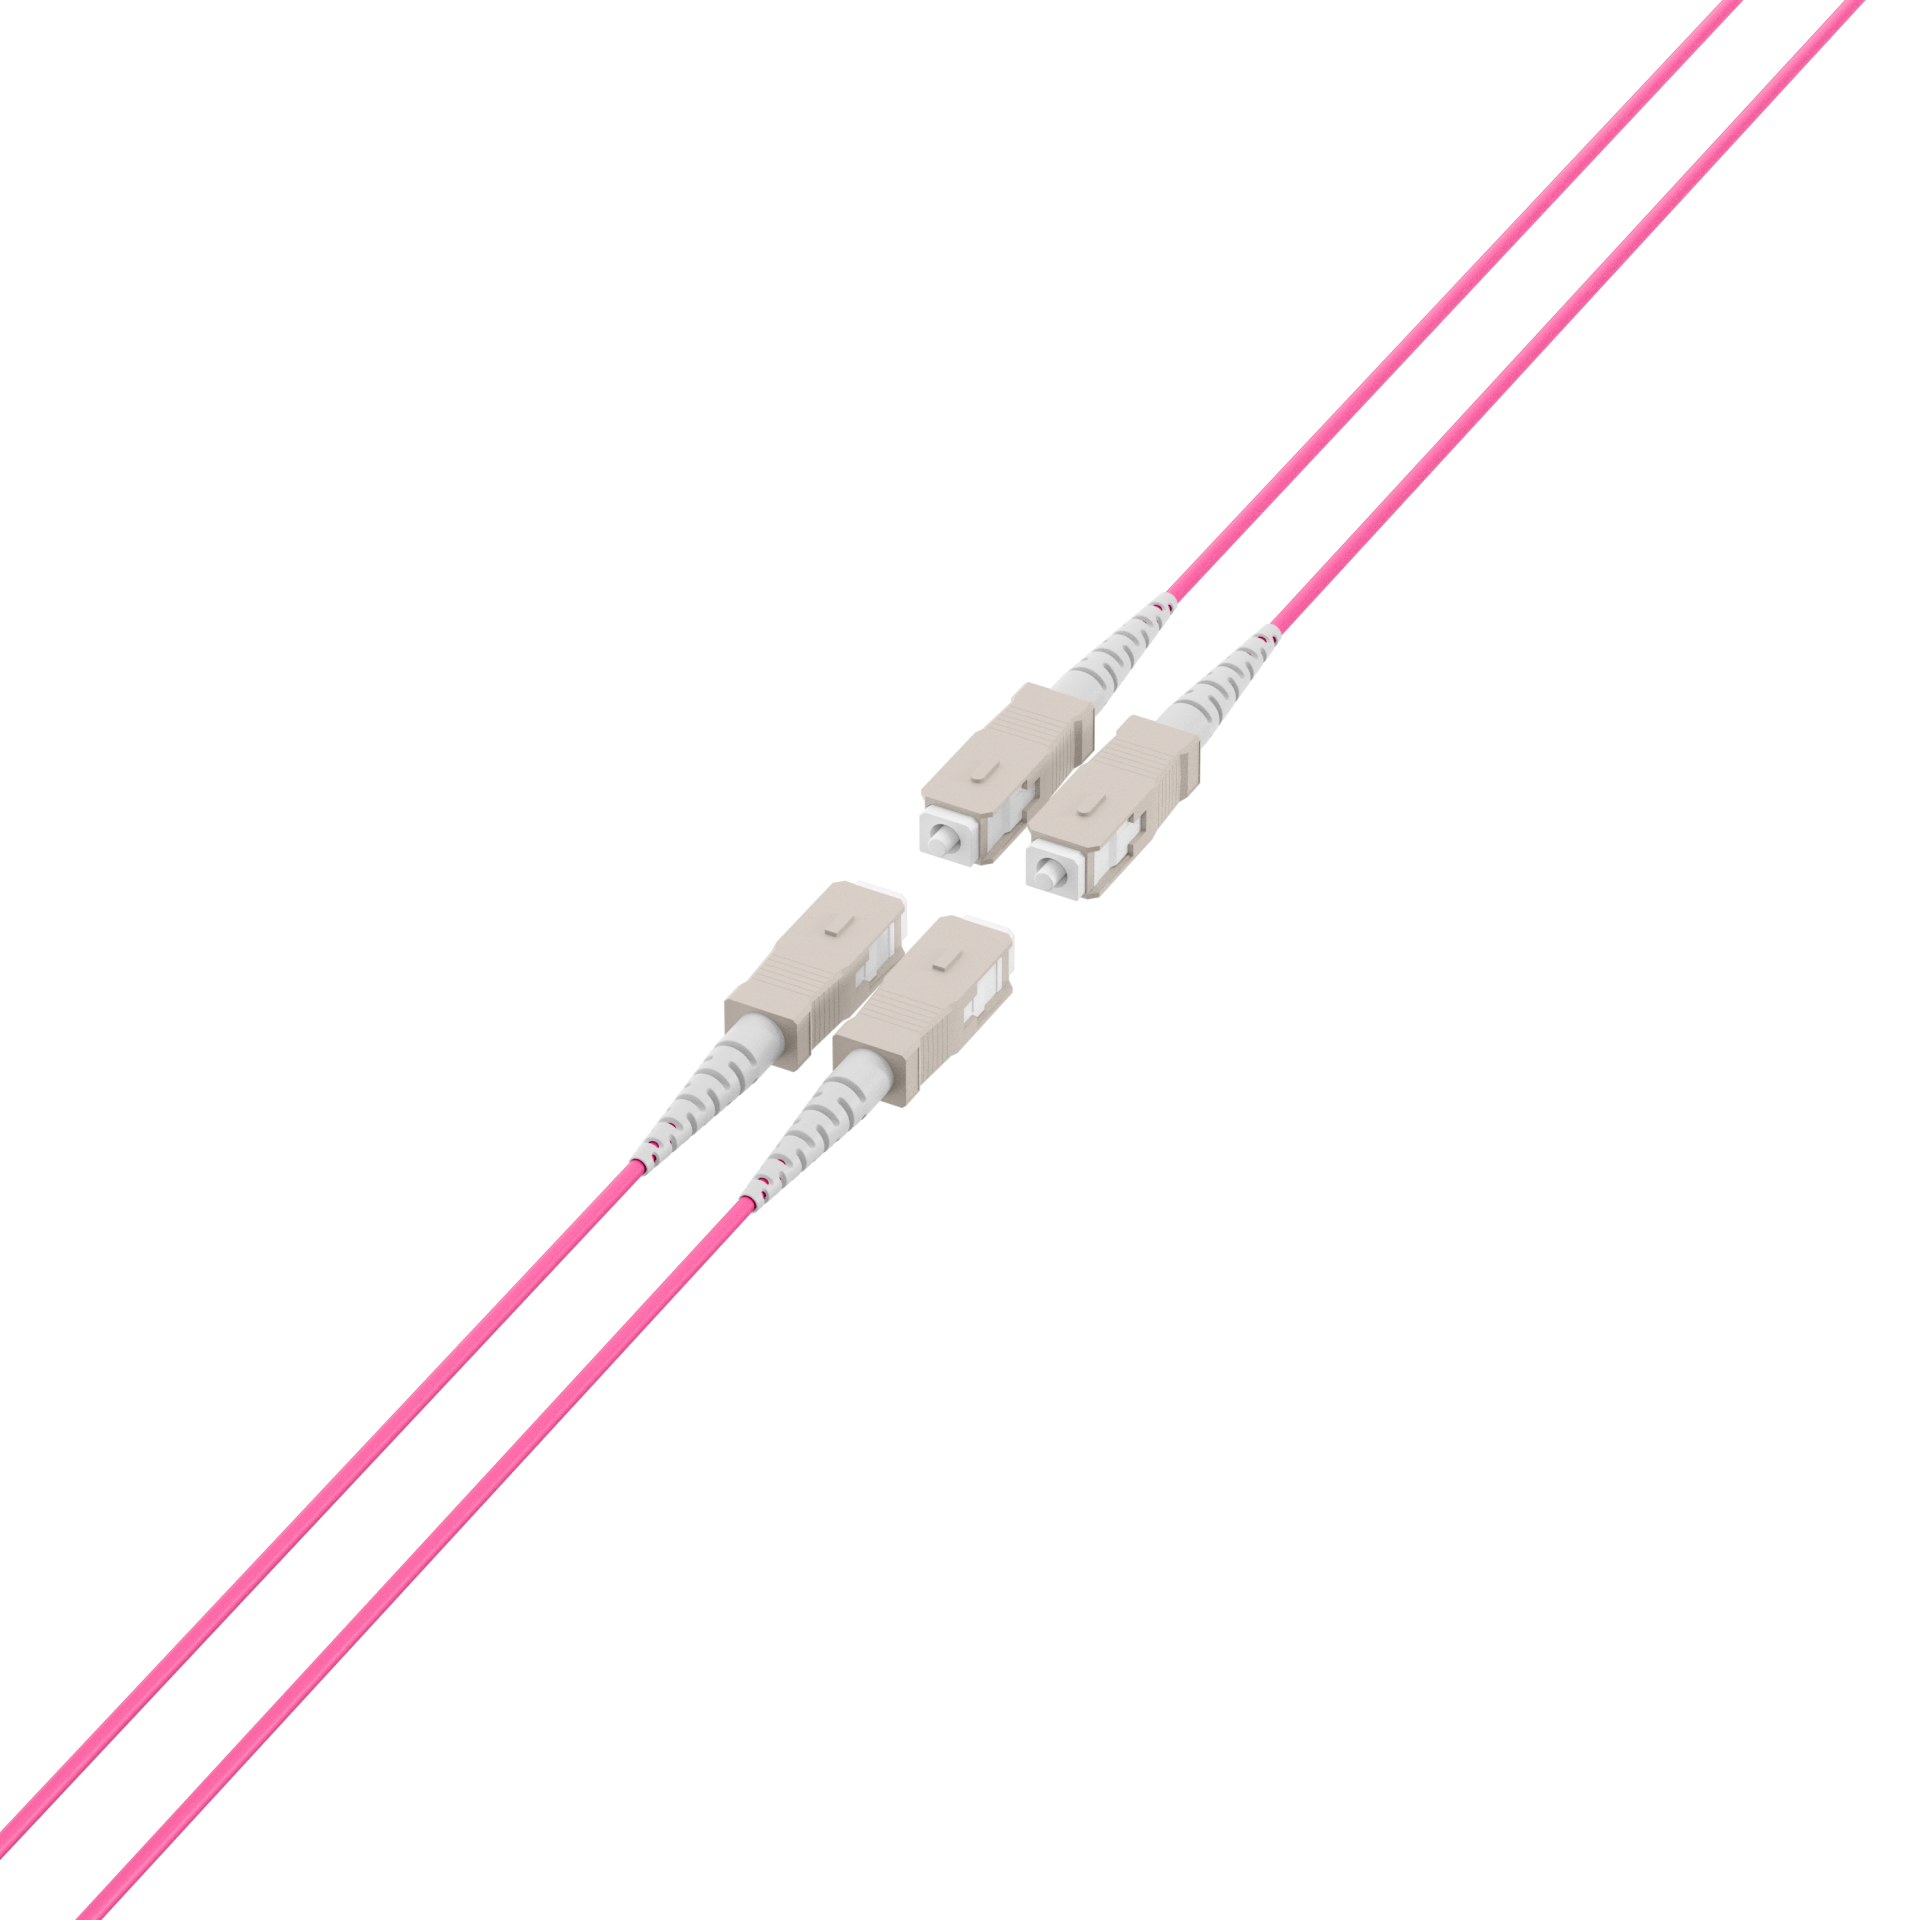 Trunk cable U-DQ(ZN)BH OM4 4G (1x4) SC-SC,180m Dca LSZH